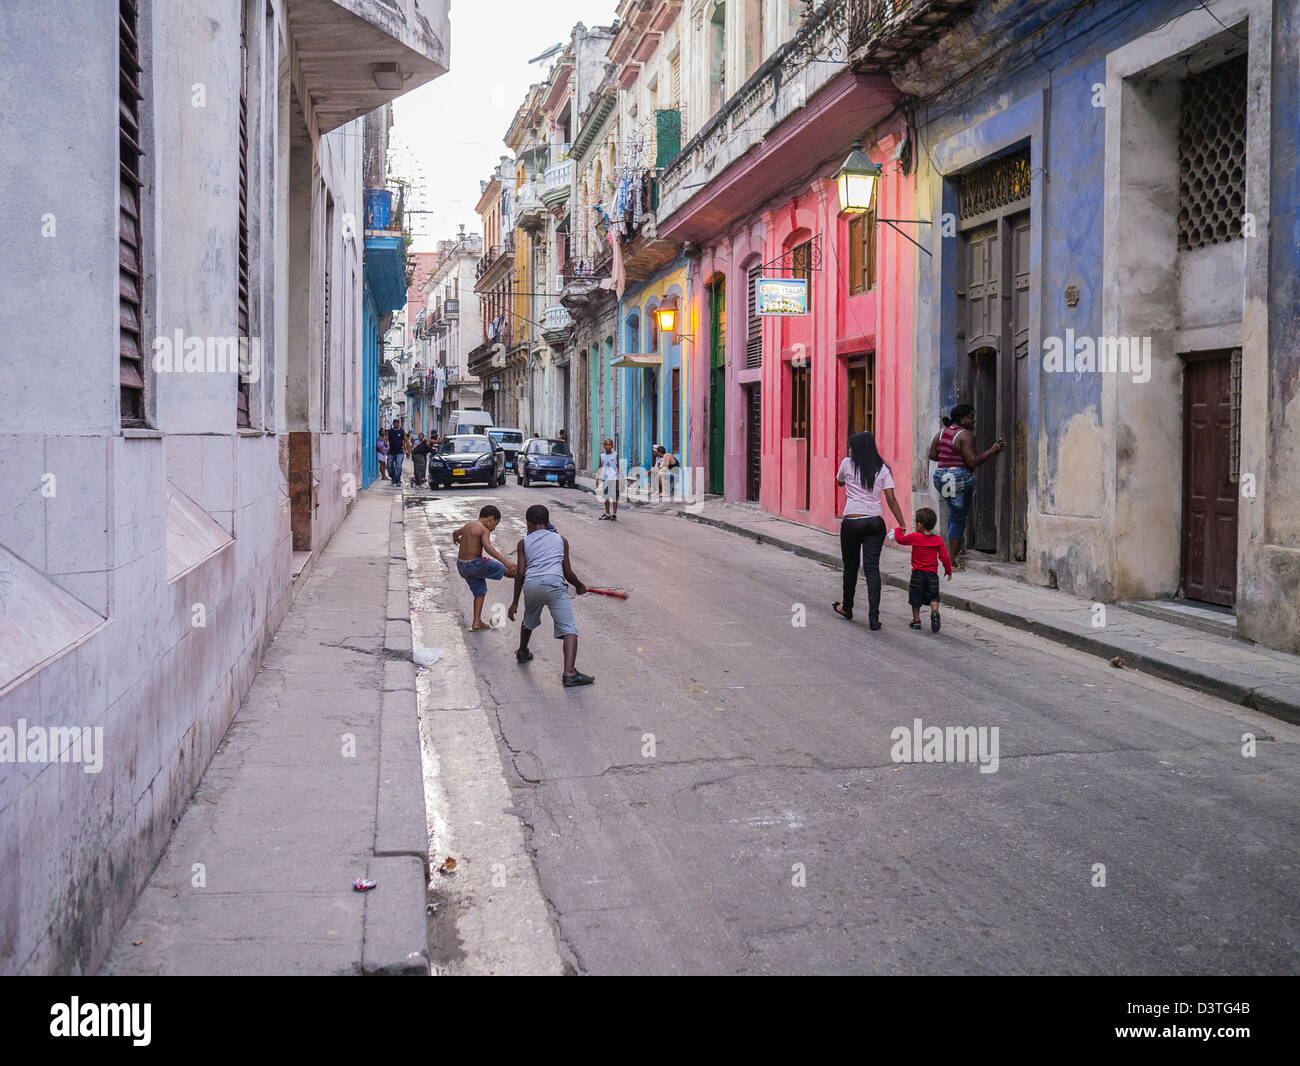 Kinder spielen Baseball in der Straße in Havanna, Kuba mit bunten alten kolonialen Gebäude entlang der schmalen Straße. Stockfoto